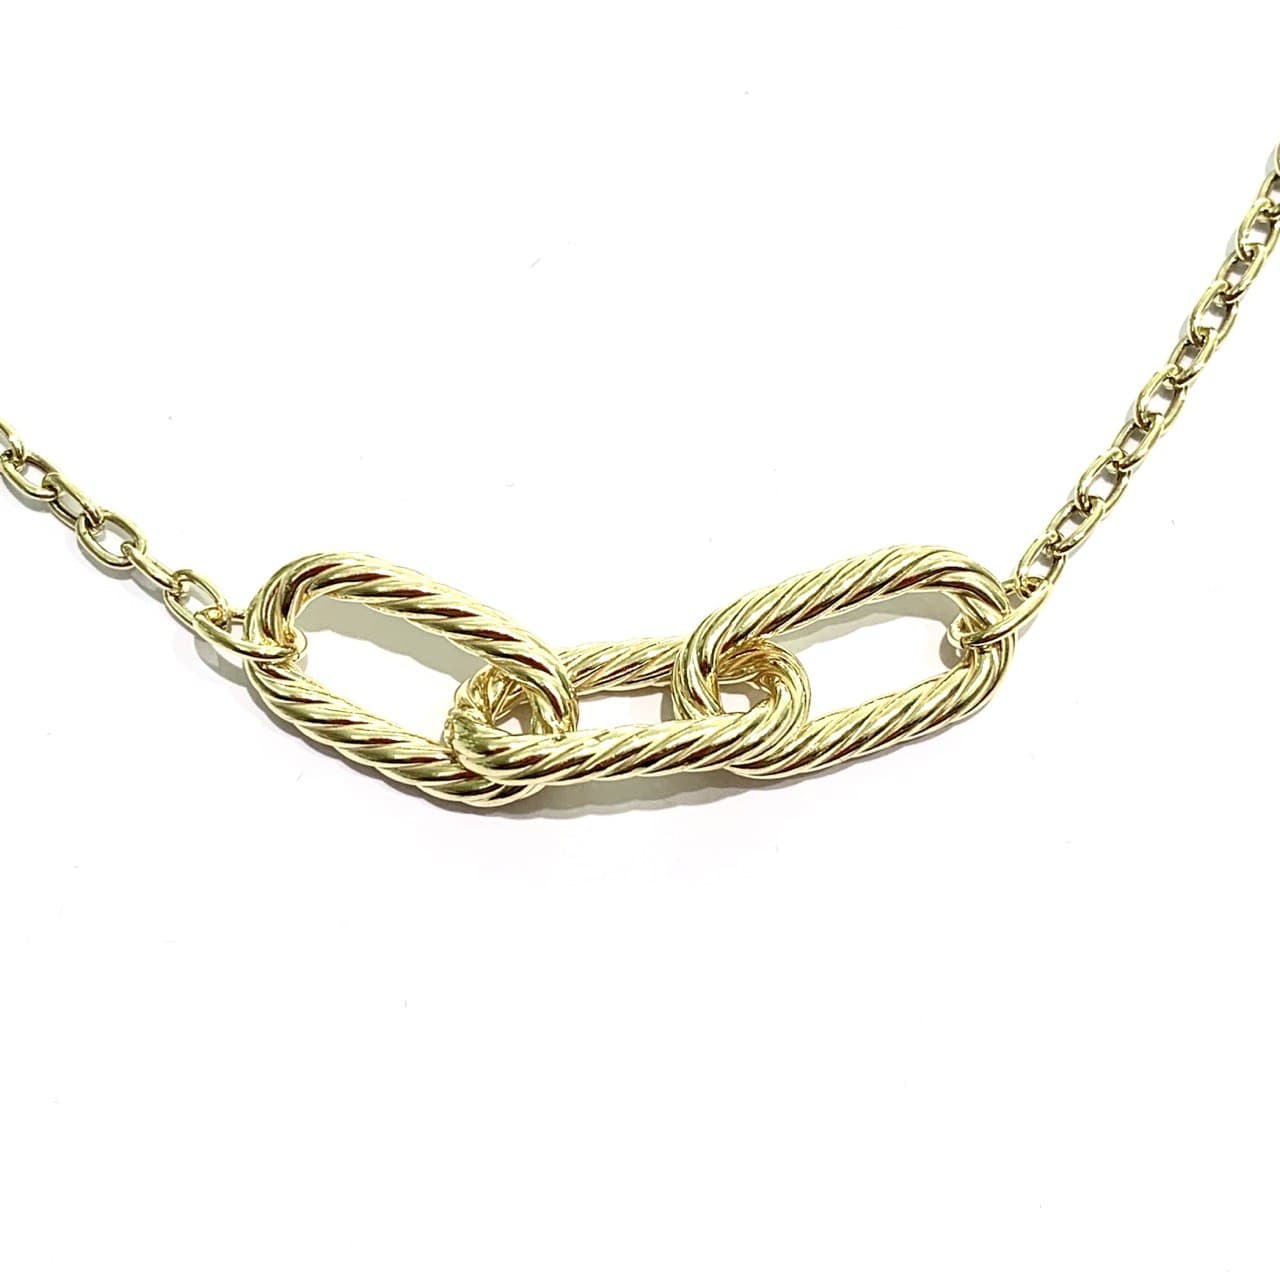 Collana in argento dorato con maglia a catena con tre anelli centrali.  Lunghezza totale 45 cm, regolabile in ogni maglia della catena.  Larghezza anelli centrali 1 cm x 5 cm di lunghezza.  Spessore catena 0,2 cm.